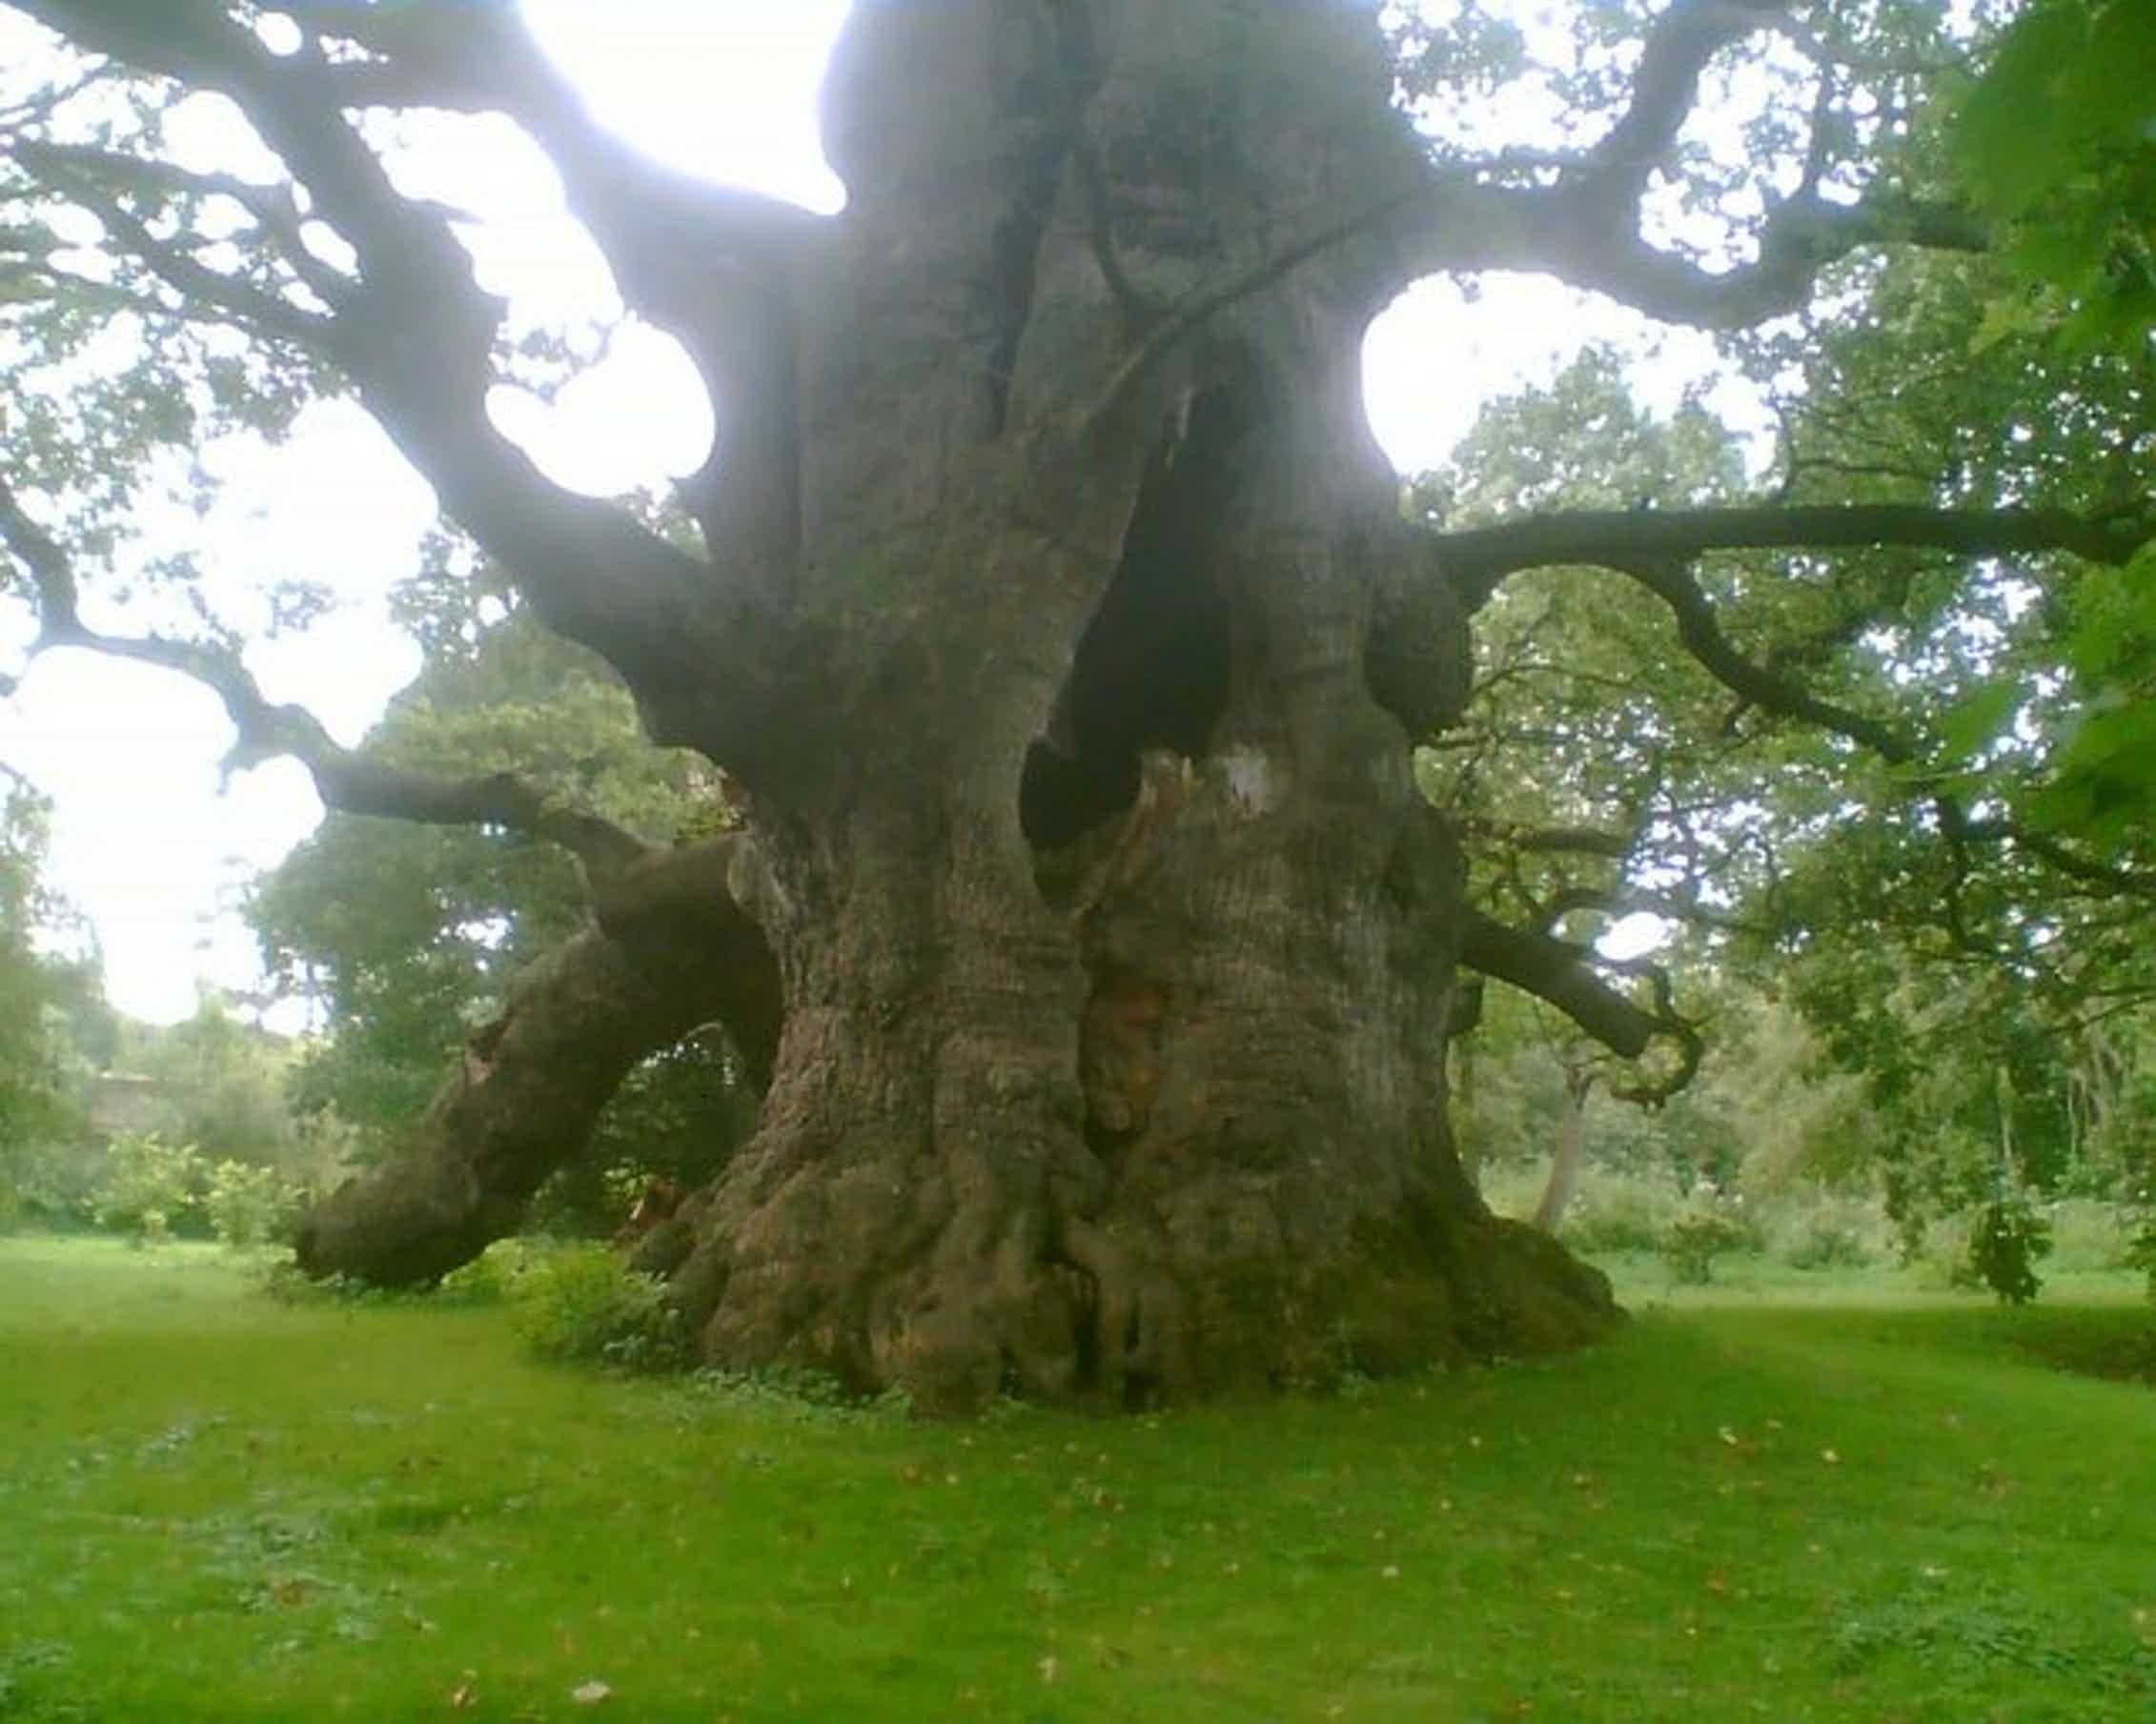 Это был огромный дуб. Дуб парк Фредвилл, Нонингтон, Великобритания. Таксодиум мексиканский (Кипарис). Румскулла дуб.